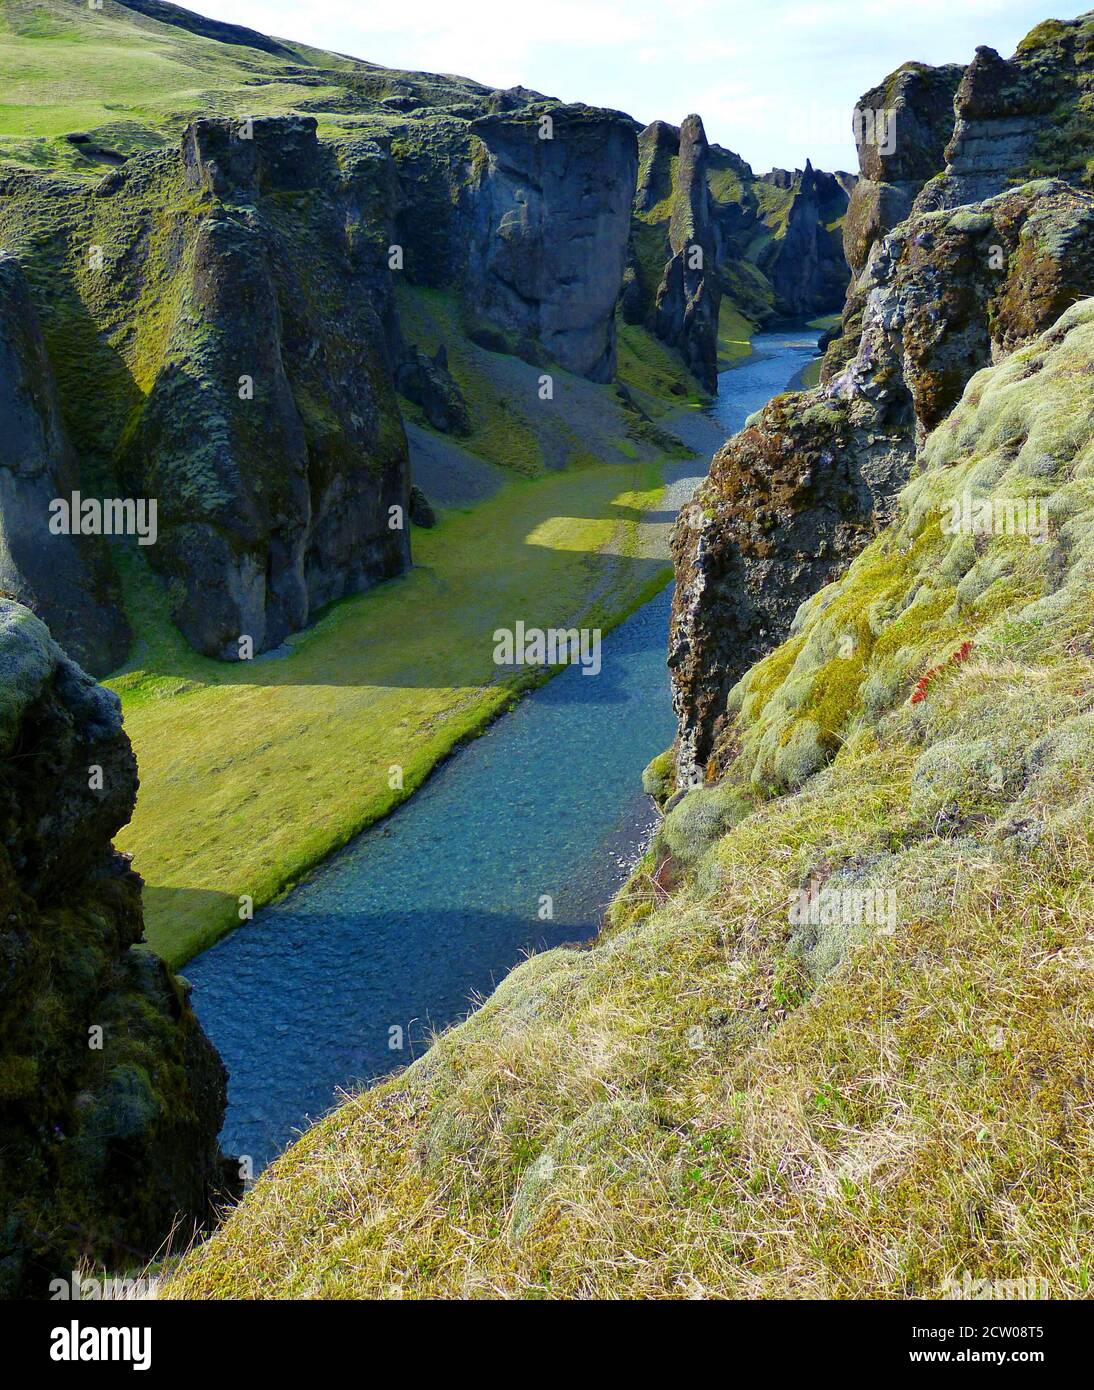 La naturaleza en Islandia. Impresionante y mágico cañón Fjadrargljufur. Río Fjadra. Paisaje natural islandés. Cuento de hadas como un profundo desfiladero con paredes de tuff. Foto de stock